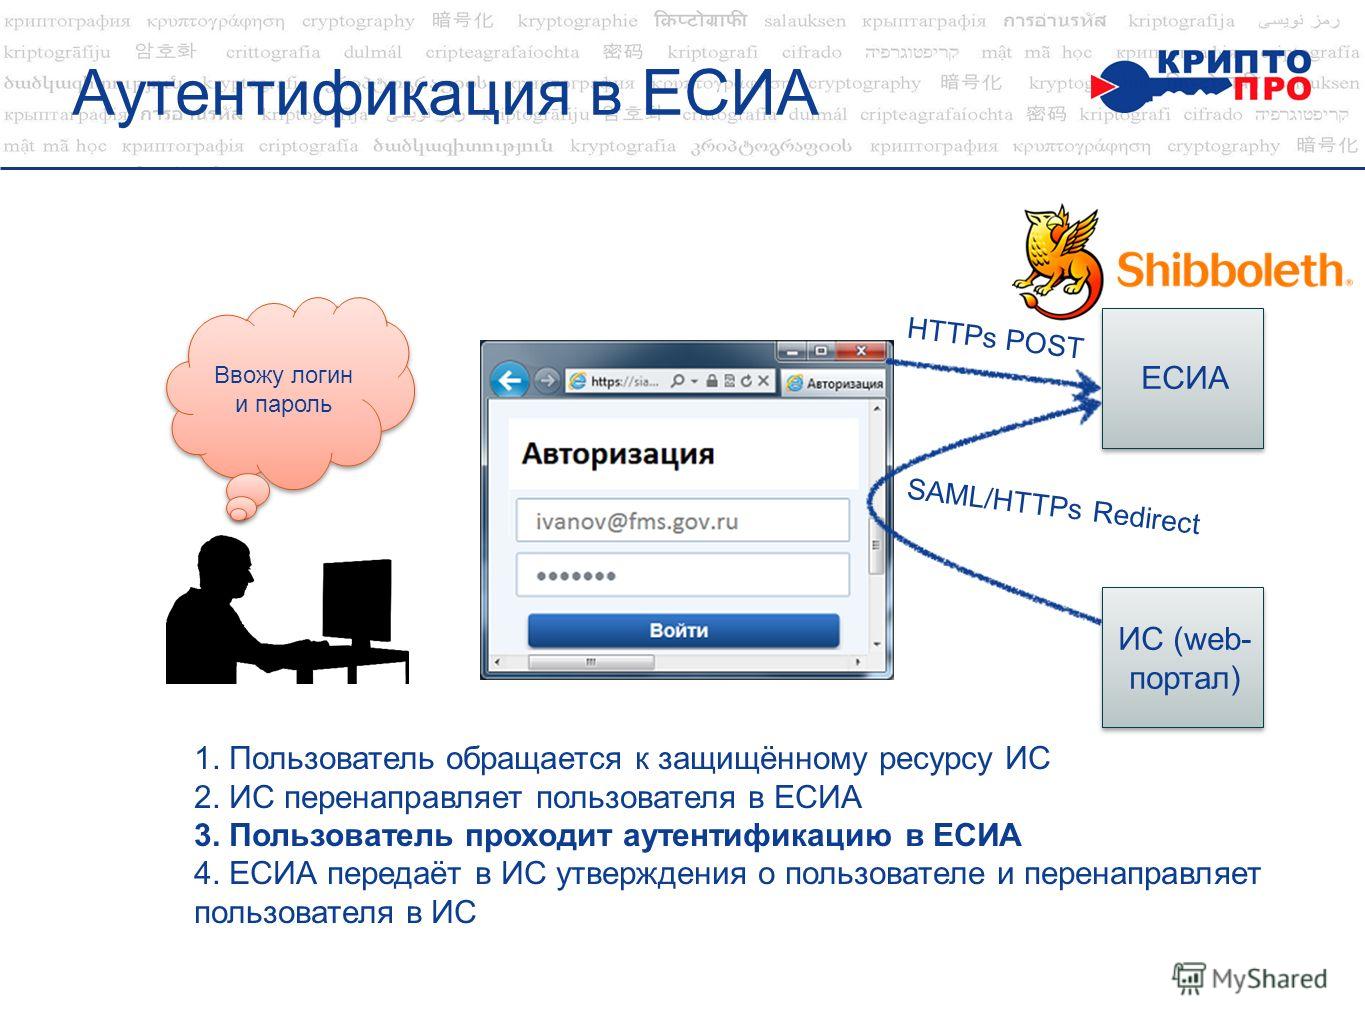 Аутентификация в ЕСИА ЕСИА ИС (web- портал) SAML/НTTPs Redirect НTTPs POST 1. Пользователь обращается к защищённому ресурсу ИС 2. ИС перенаправляет пользователя в ЕСИА 3. Пользователь проходит аутентификацию в ЕСИА 4. ЕСИА передаёт в ИС утверждения о